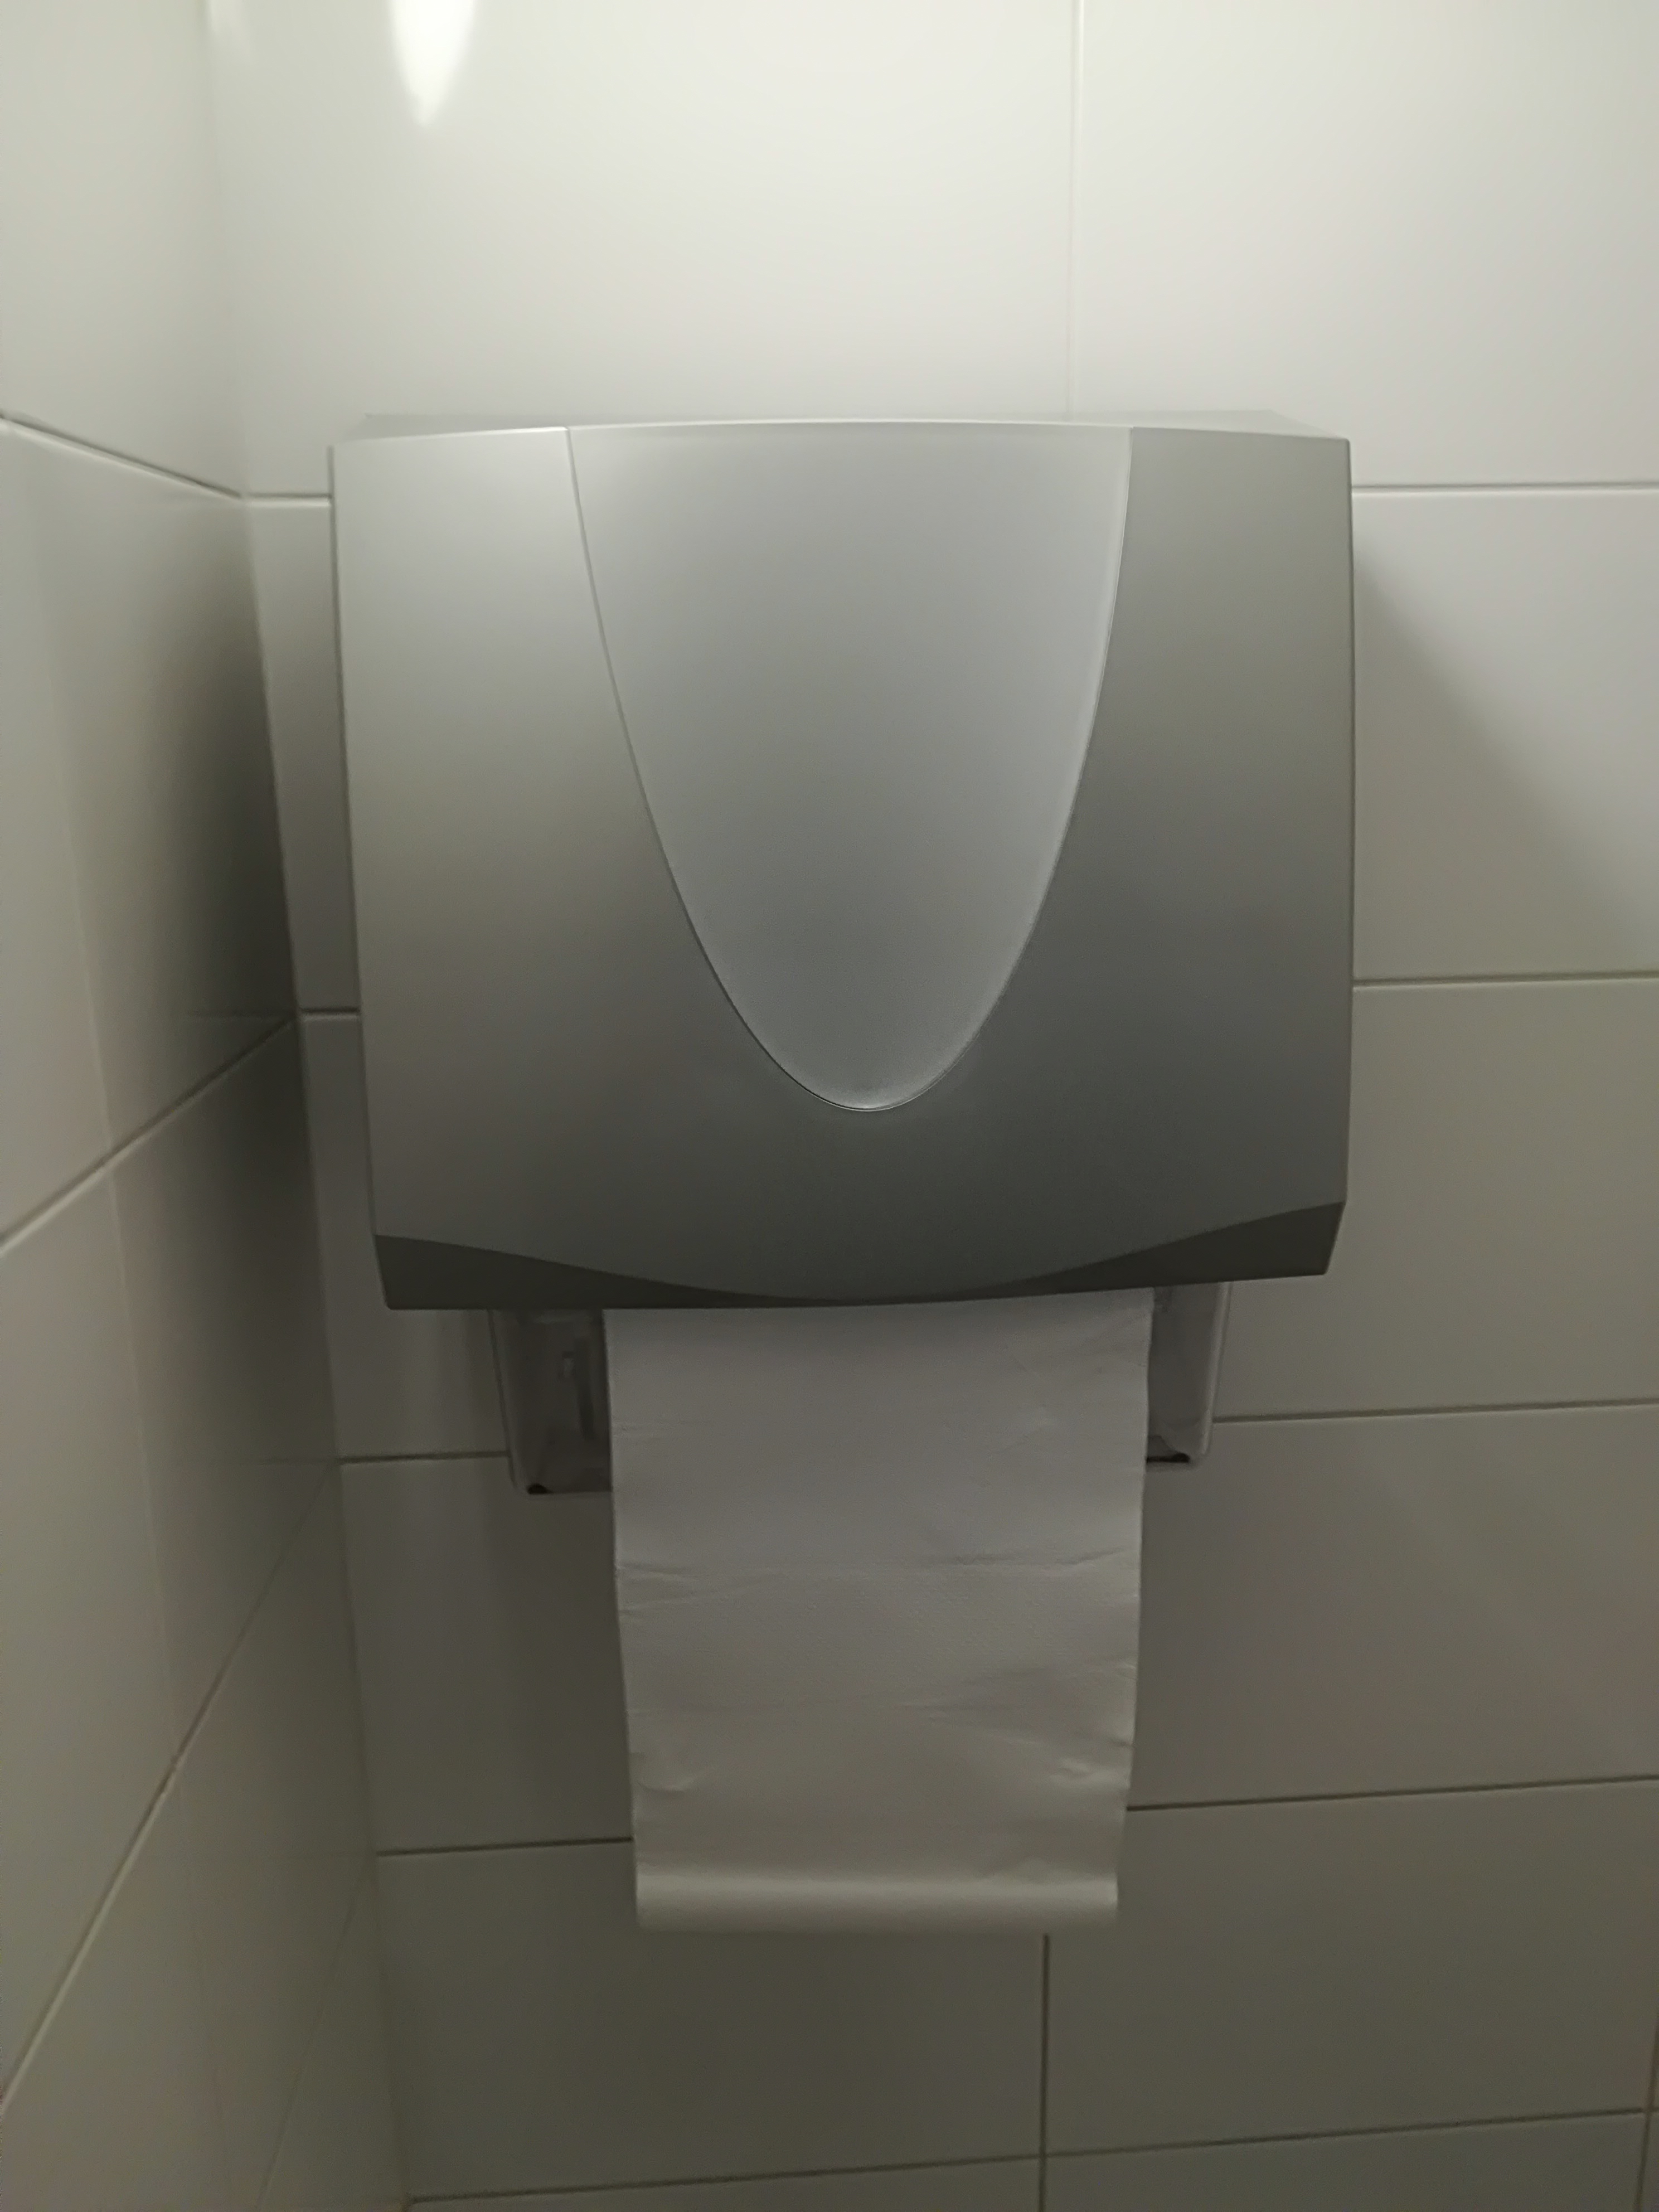 De Integra is een robuuste handdoekautomaat met doorlooprol
